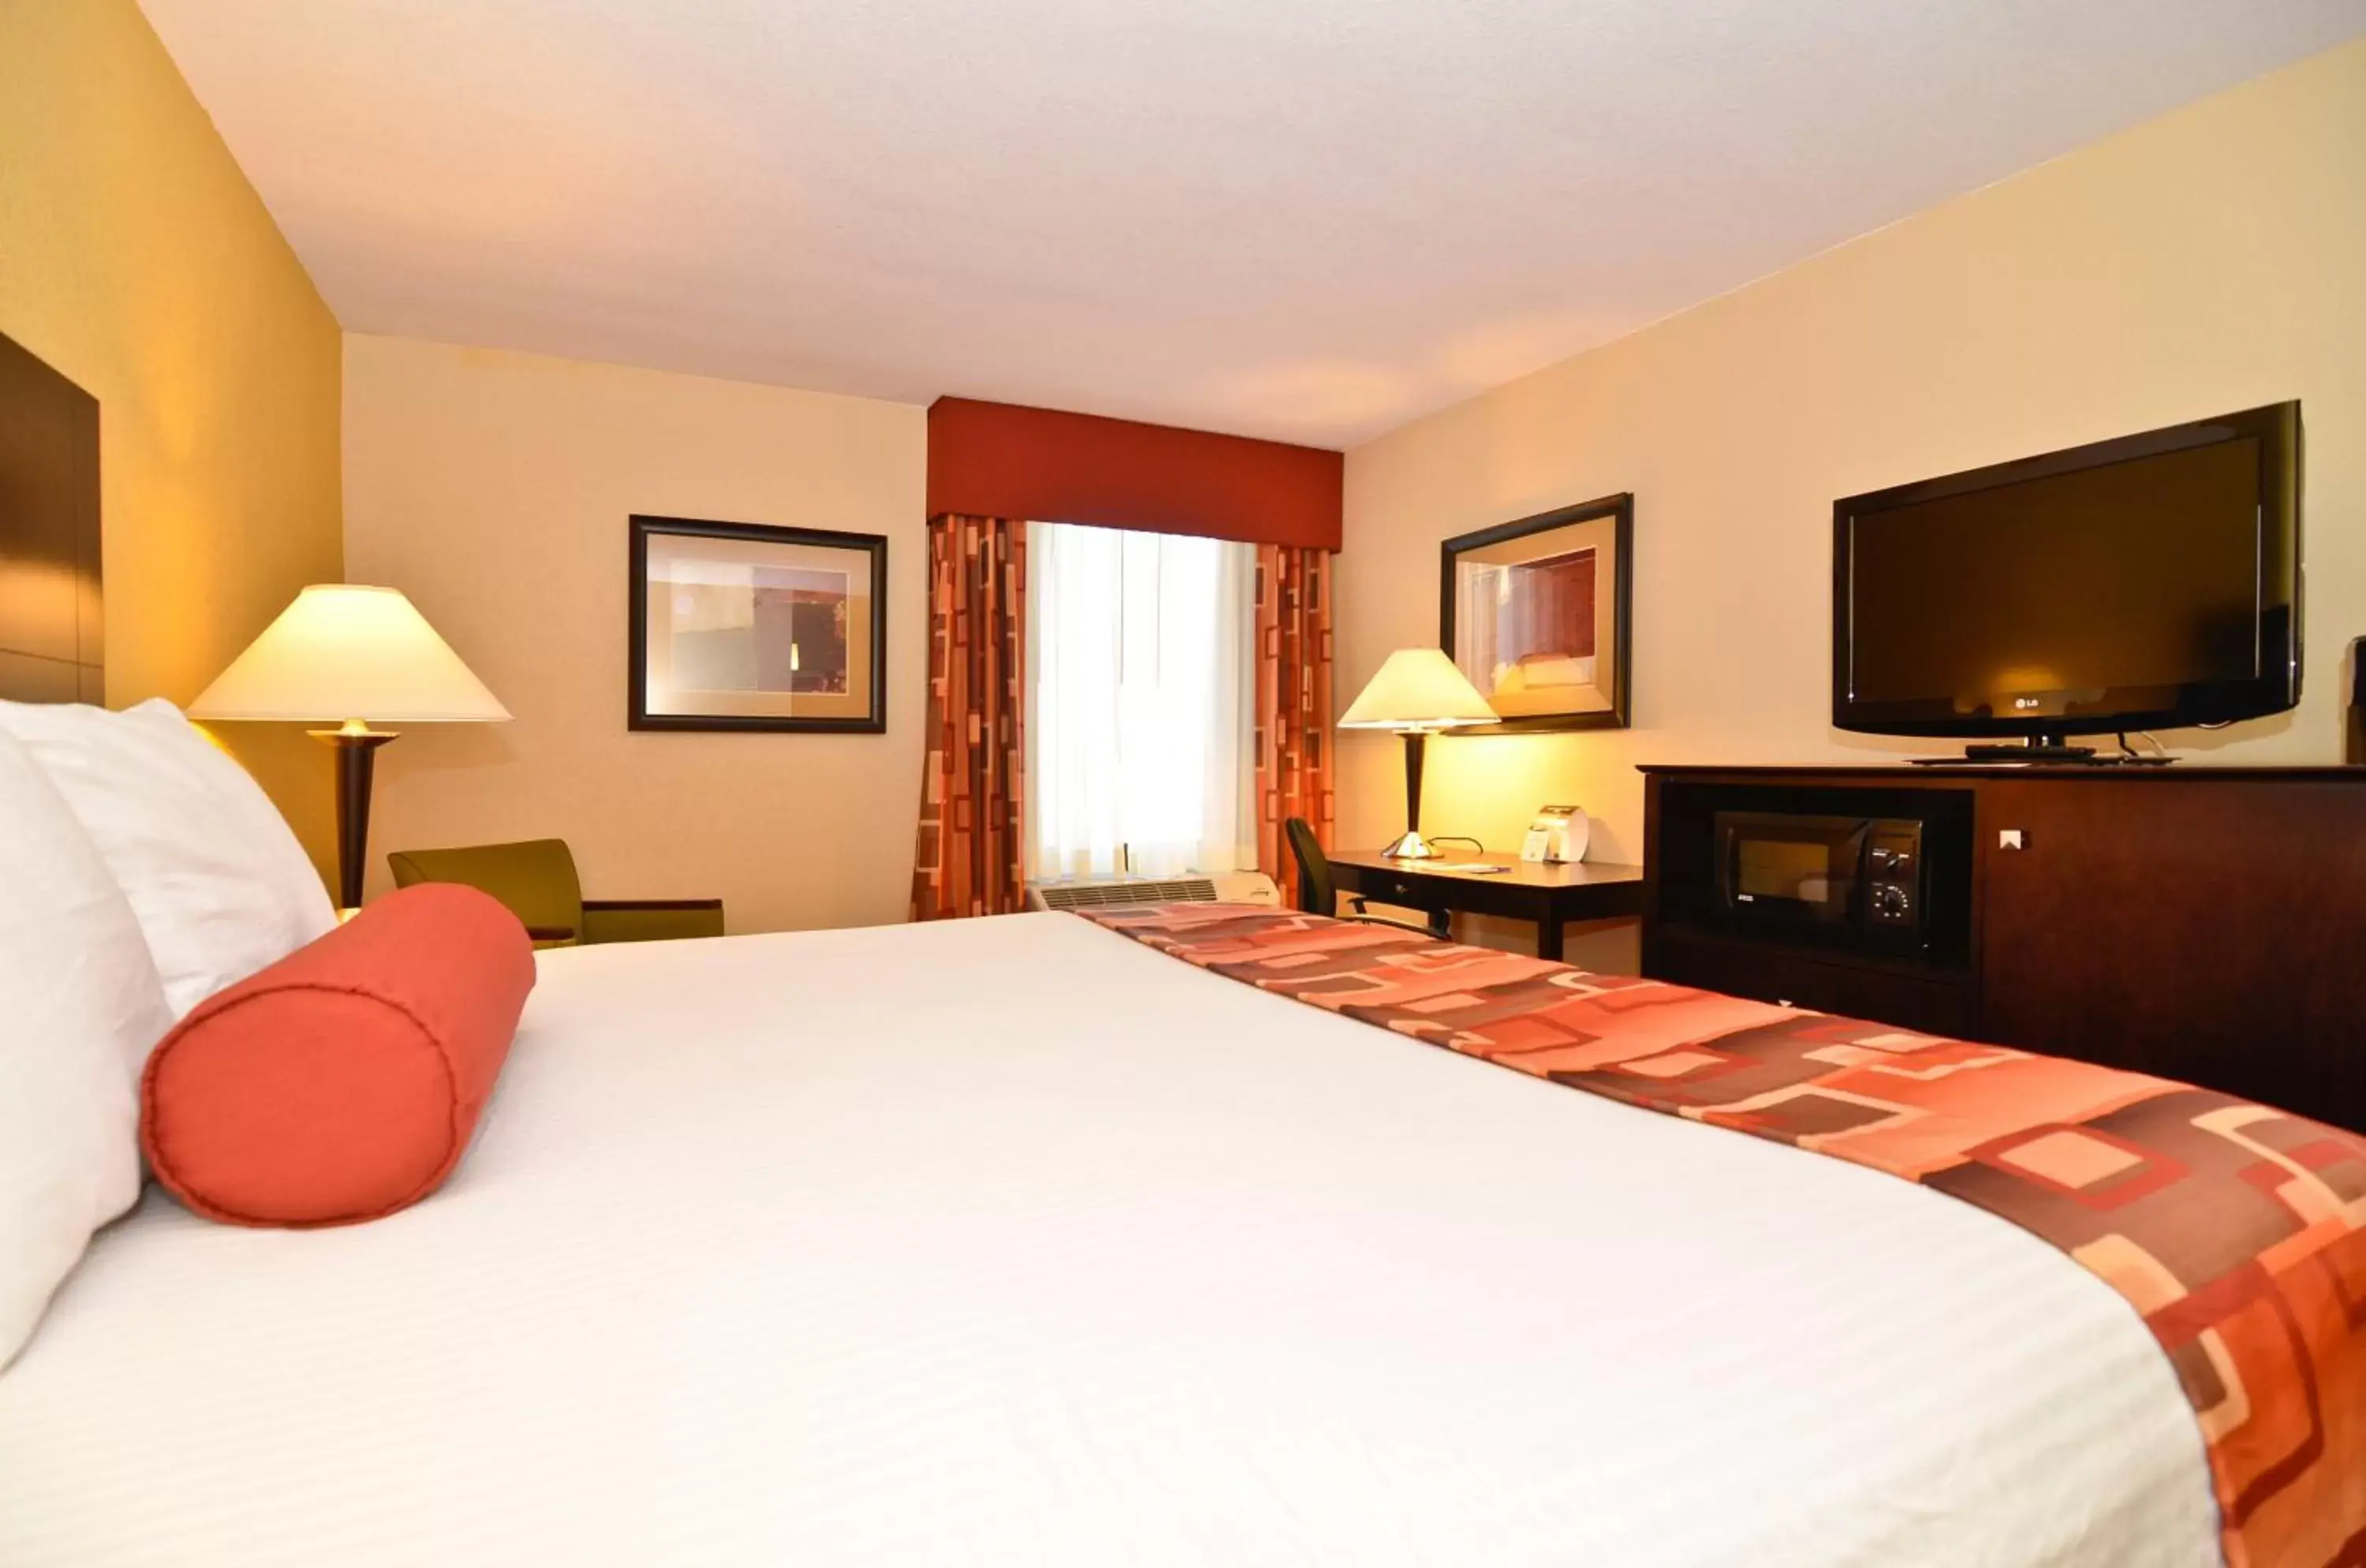 Bedroom, Bed in Best Western Plus Parkway Hotel